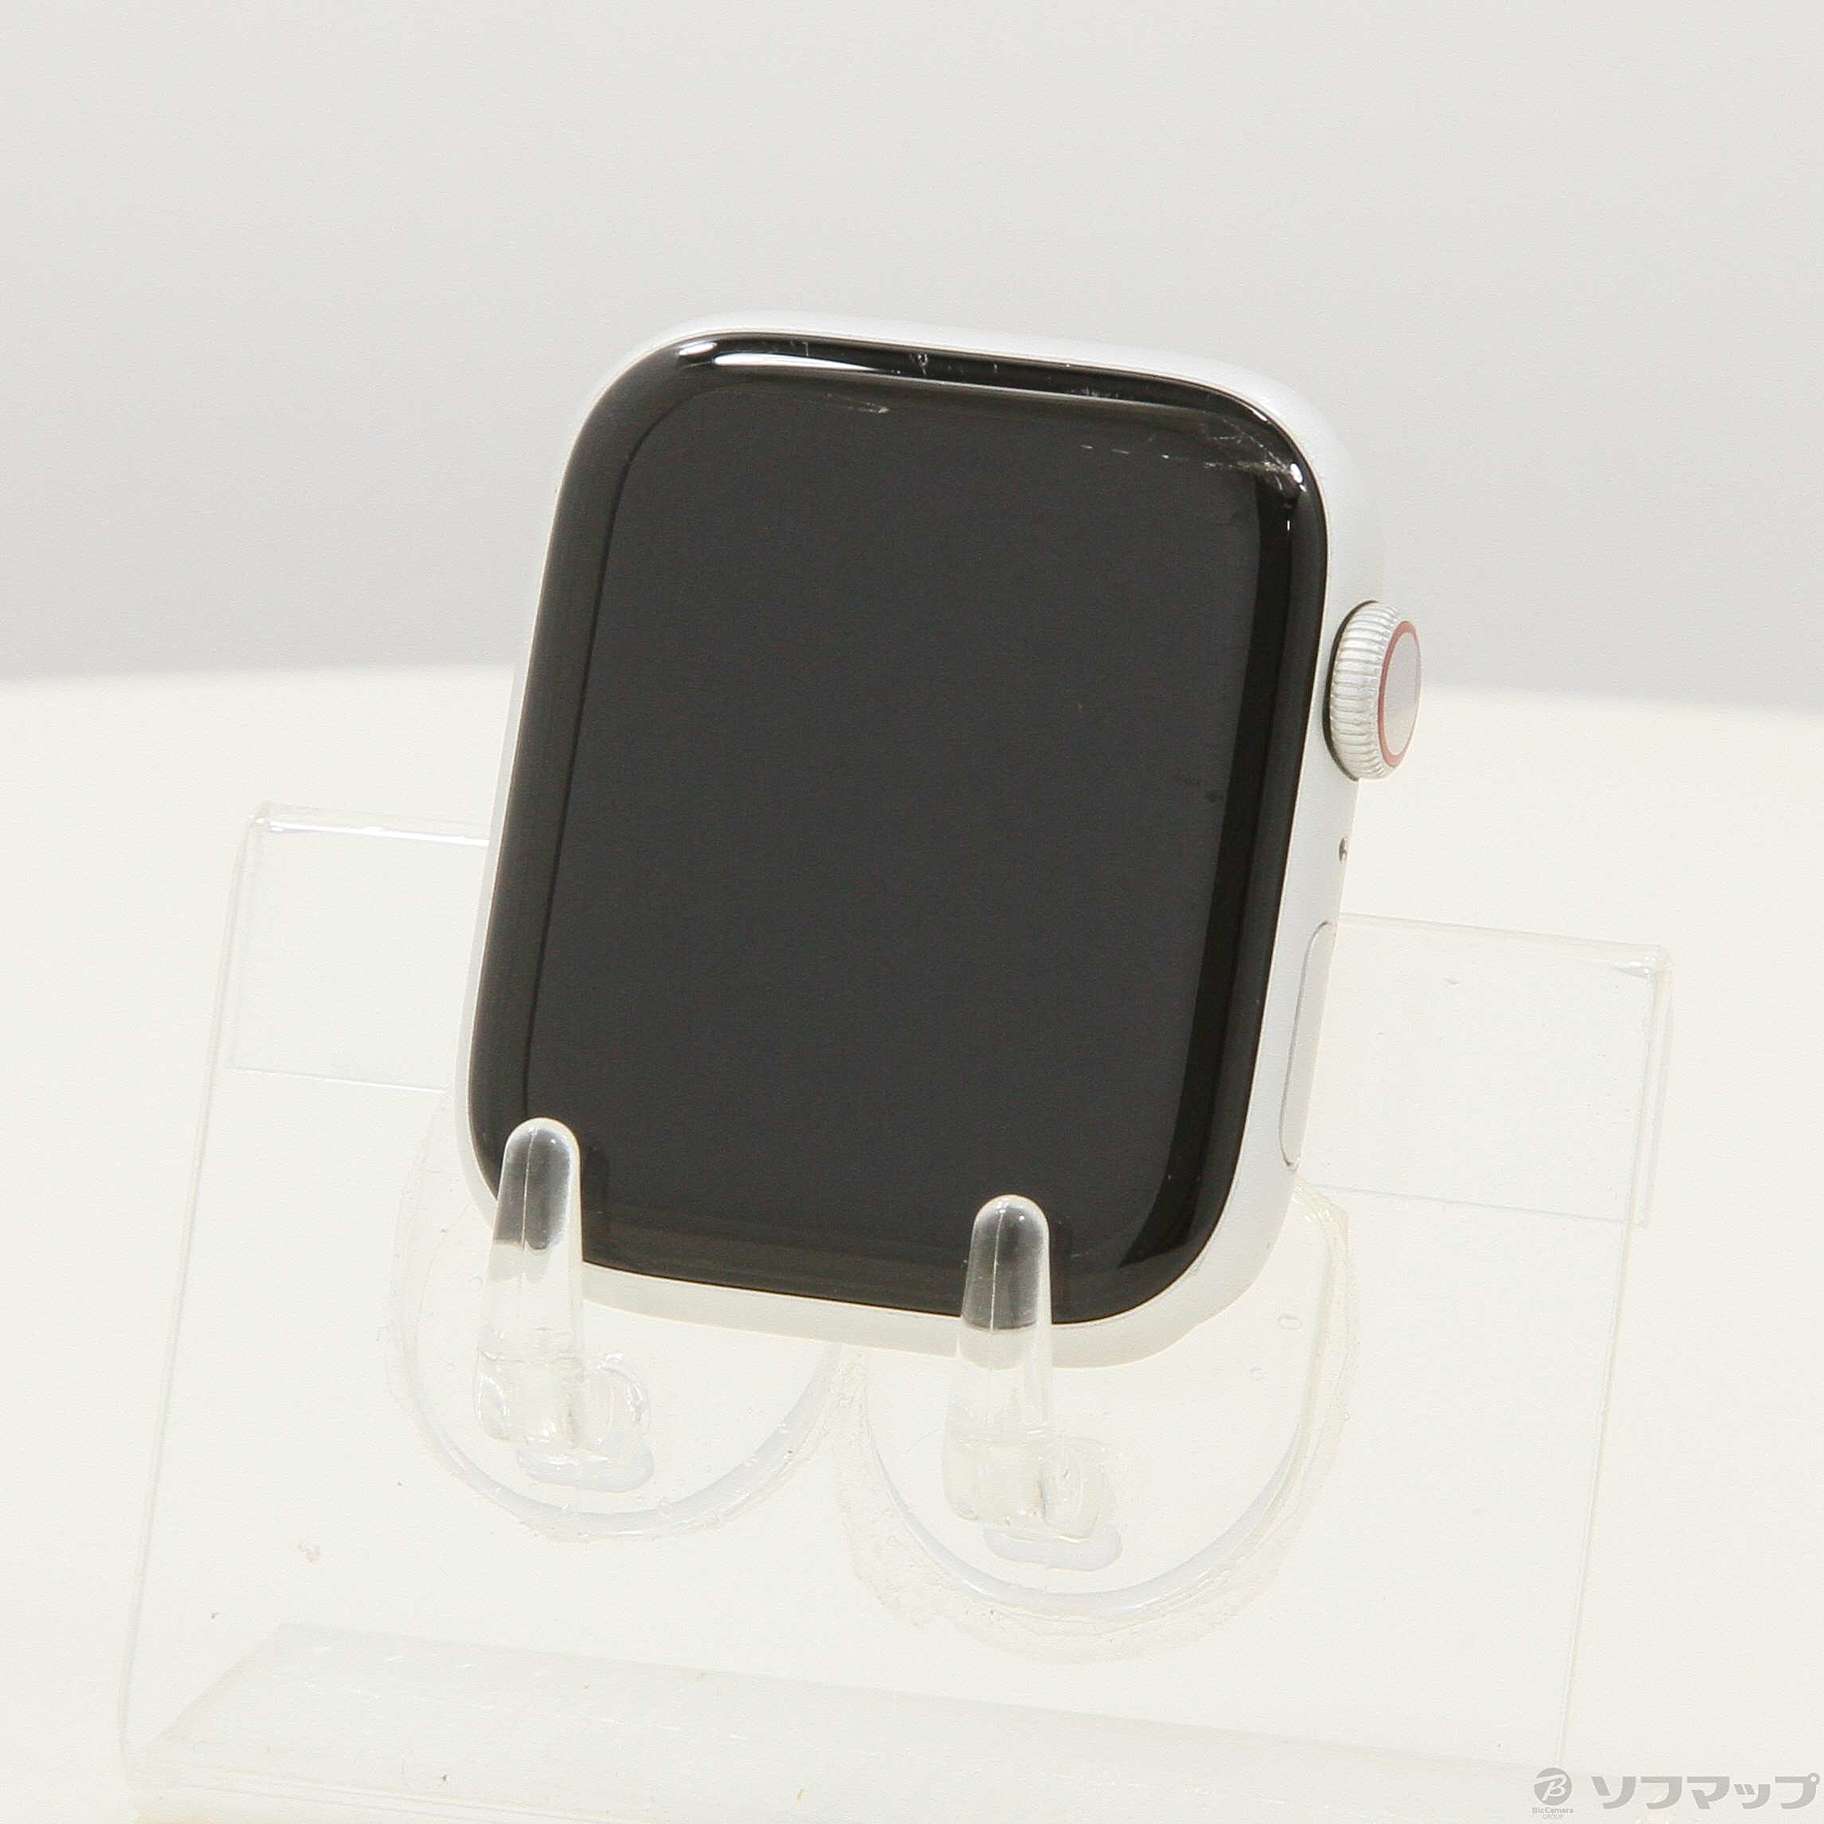 Apple Watch シリーズ5 シルバーアルミニウム 44mm セルラー